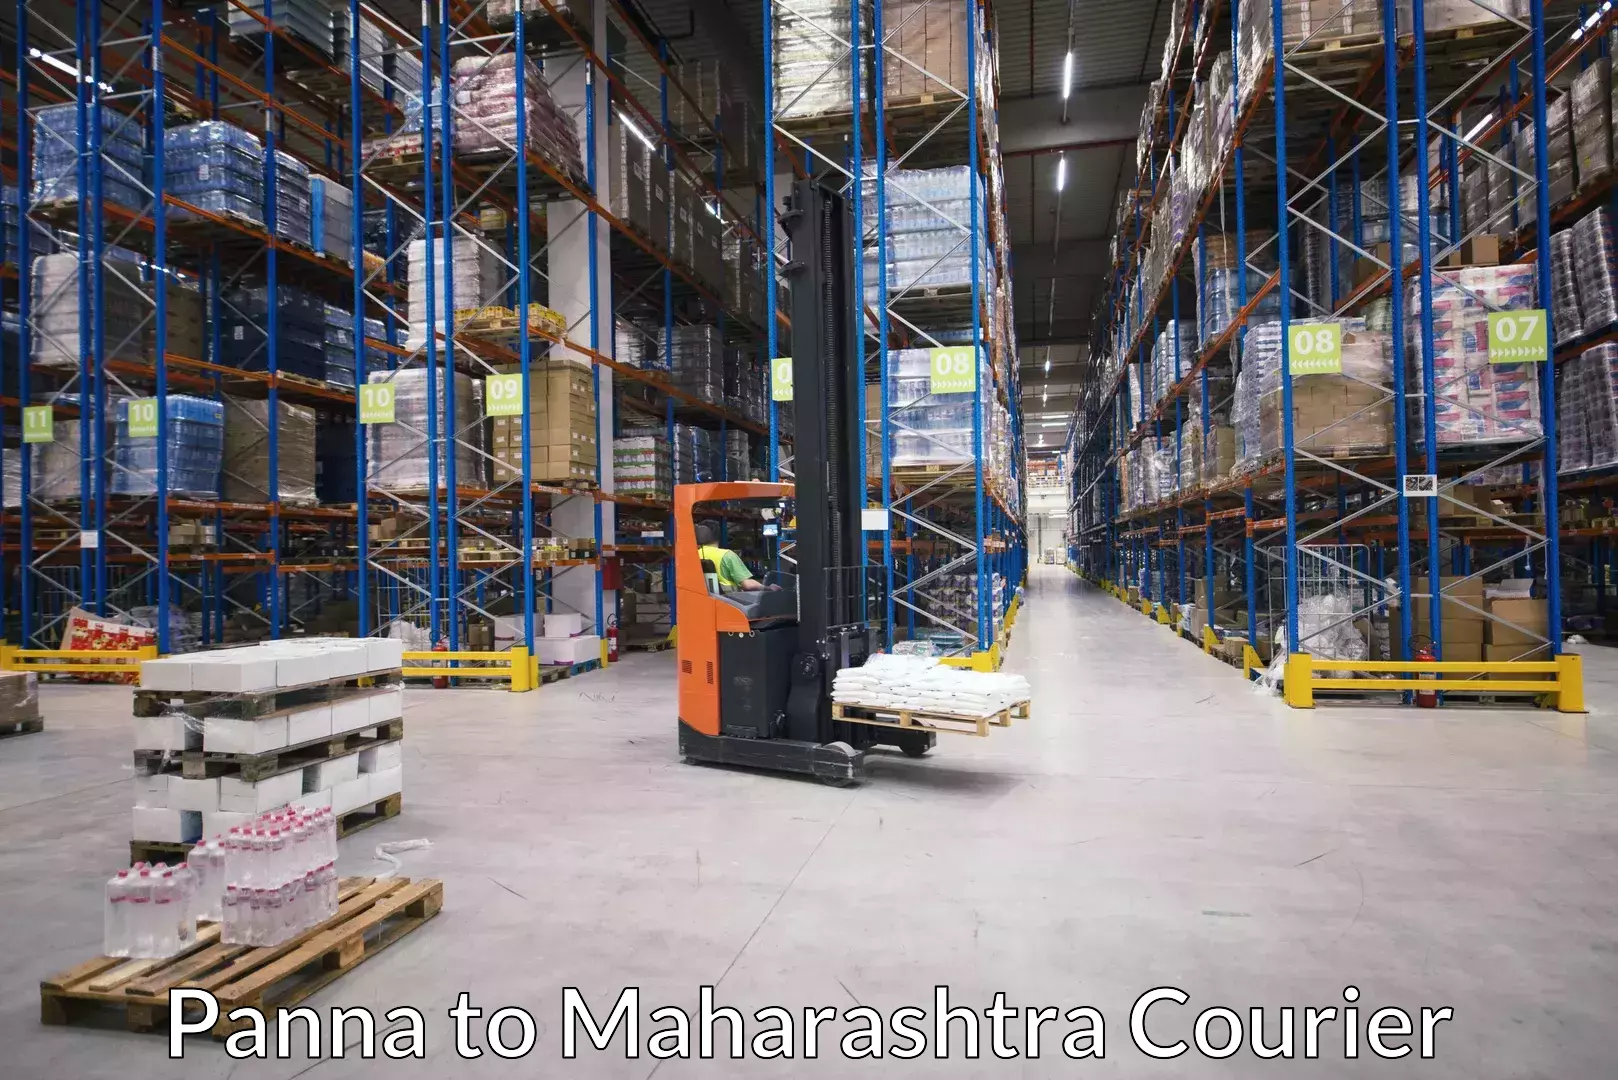 Luggage delivery app Panna to Maharashtra